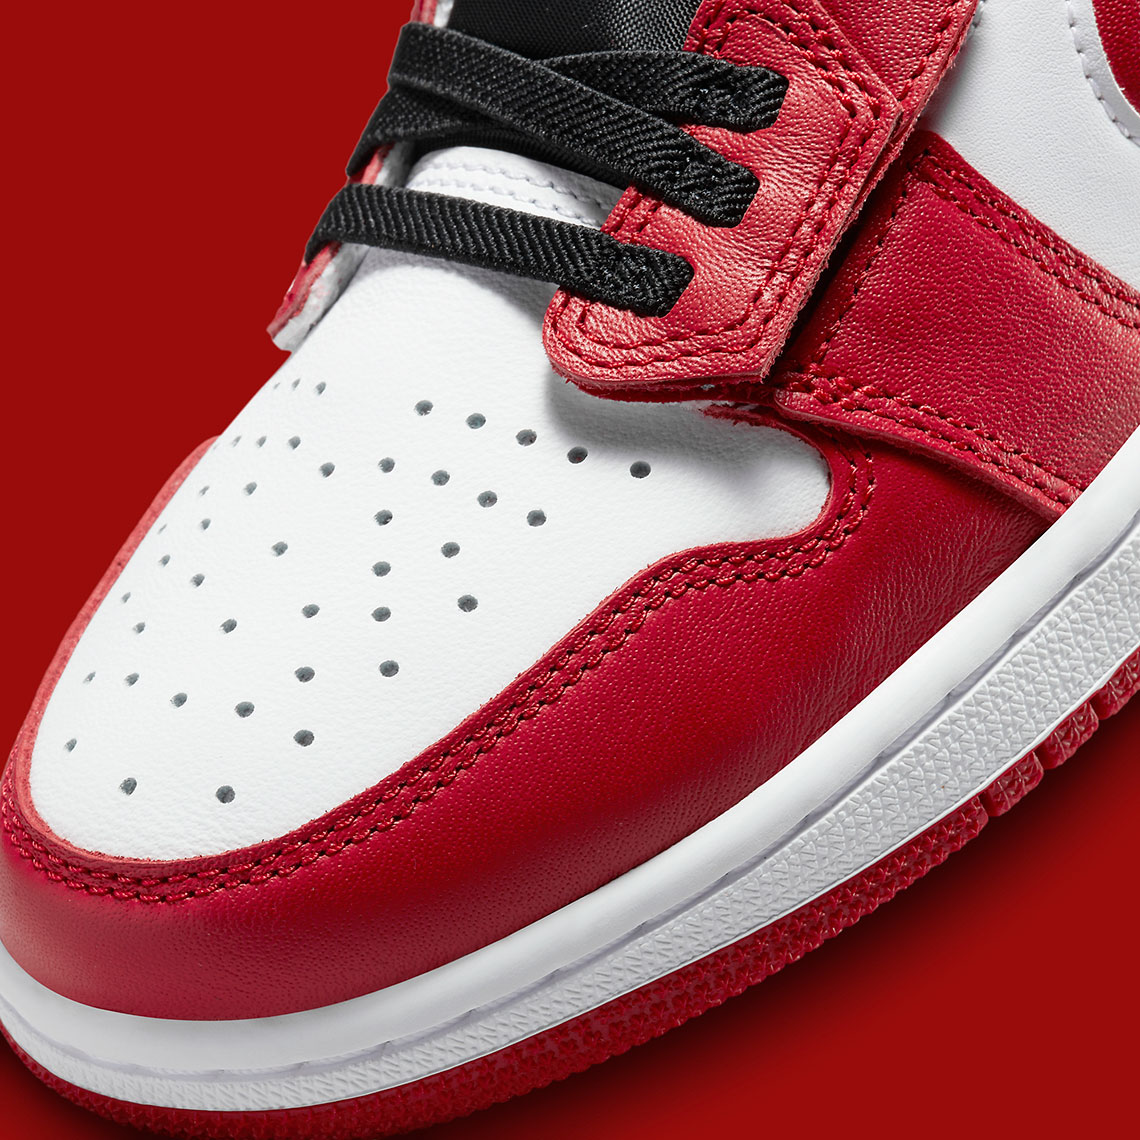 Air Jordan 1 Low Flyease Red Black Dm1206 163 Release Date